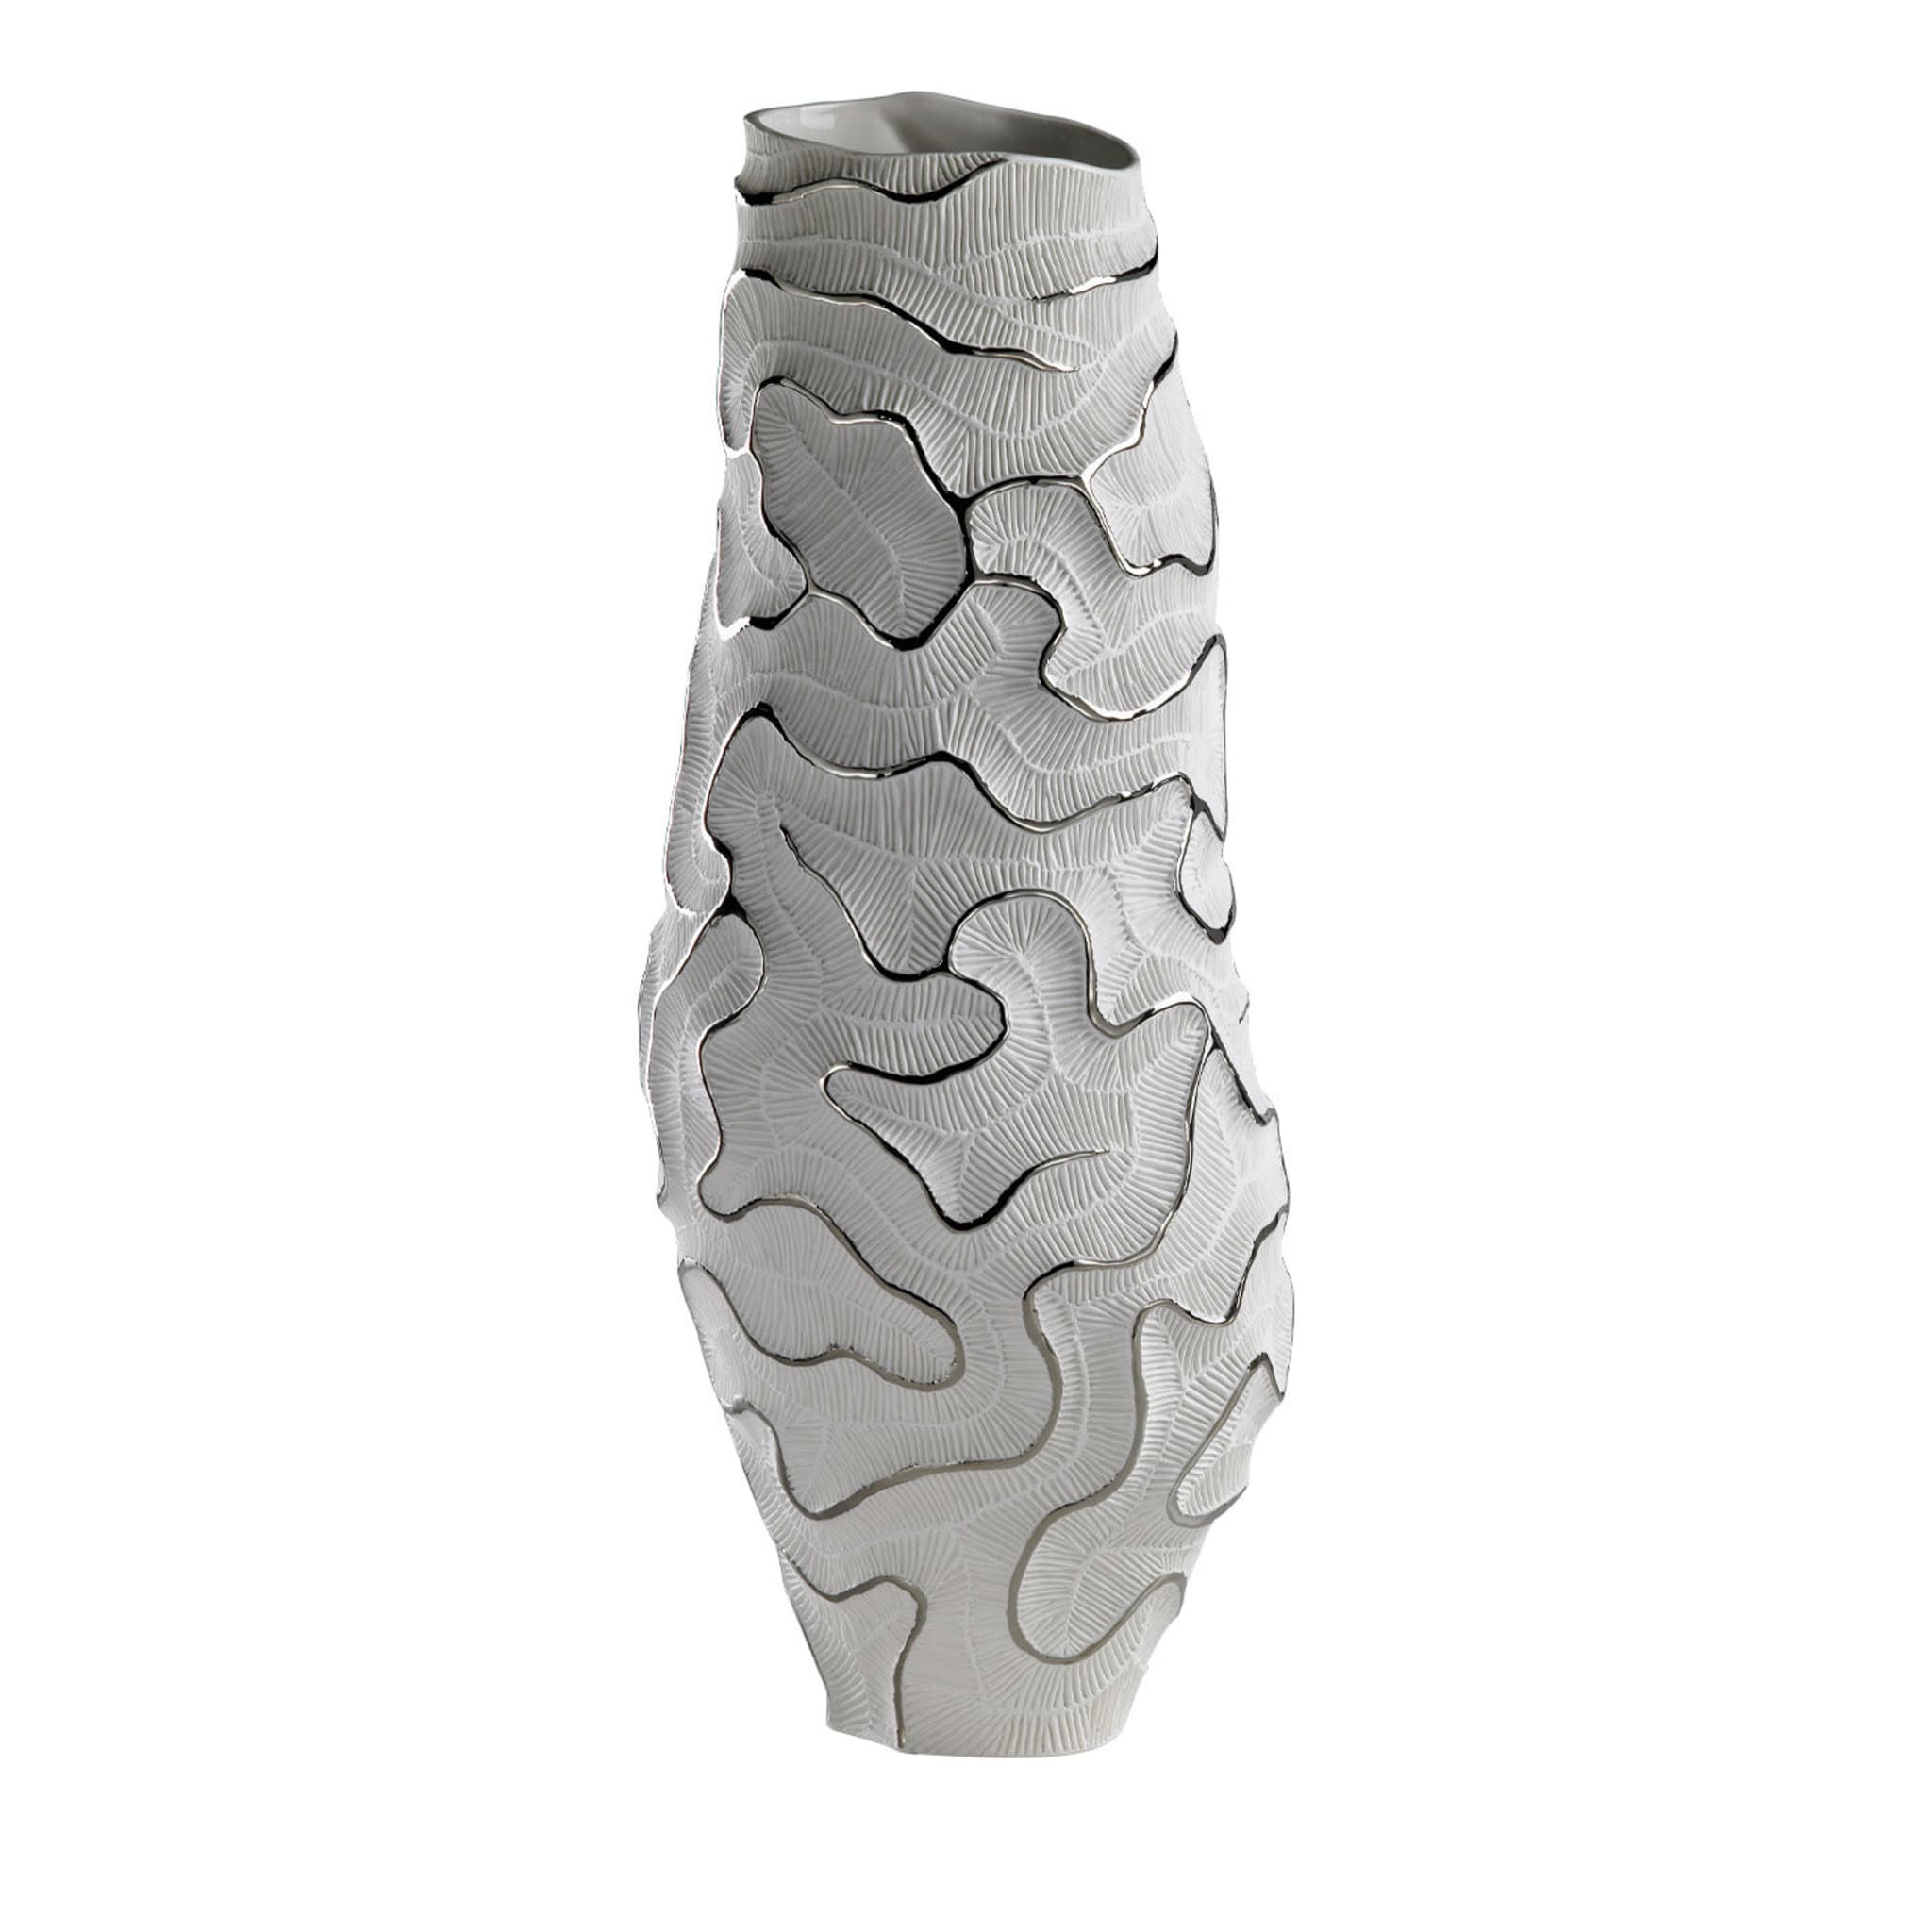 Monolith-Platin-Vase - Hauptansicht